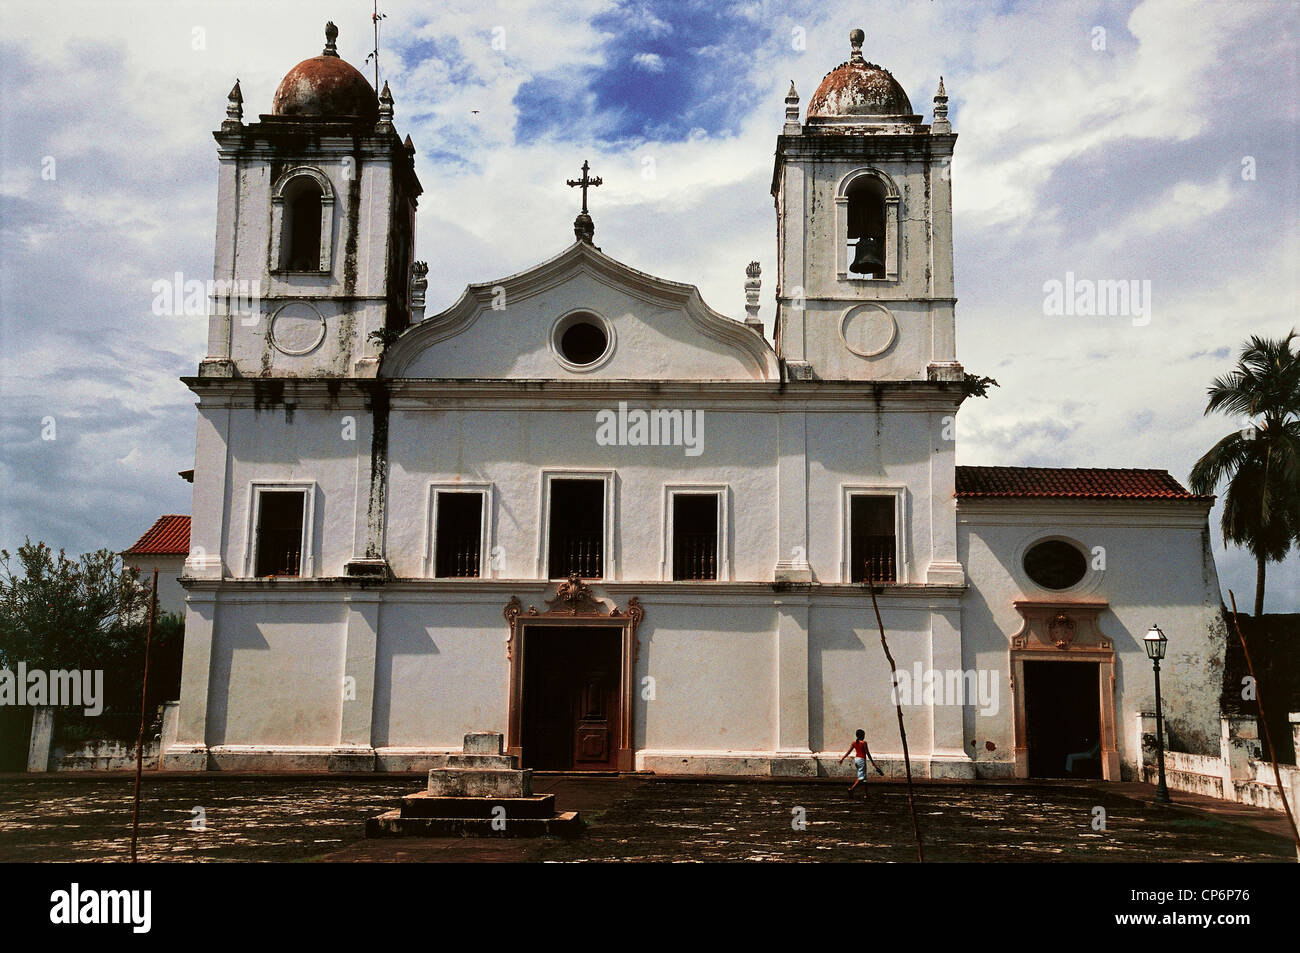 Brasil - Estado de Maranh?s - Alcántara (Patrimonio Nacional de Brasil) - La Igreja de Nossa Senhora do Carmo (siglo XVII) Foto de stock